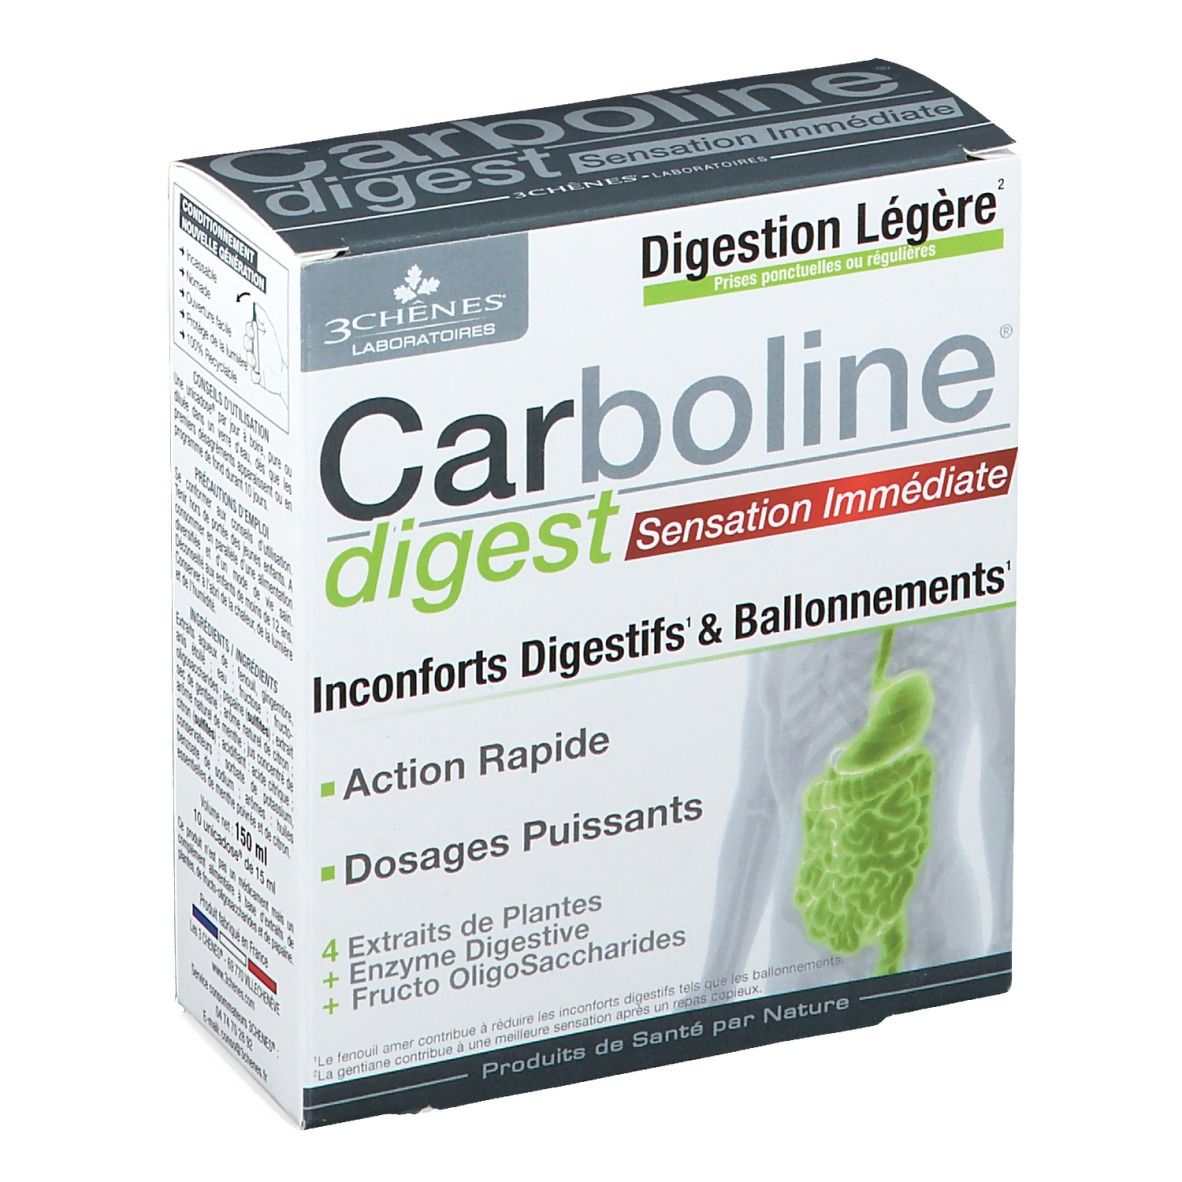 Carboline® digest